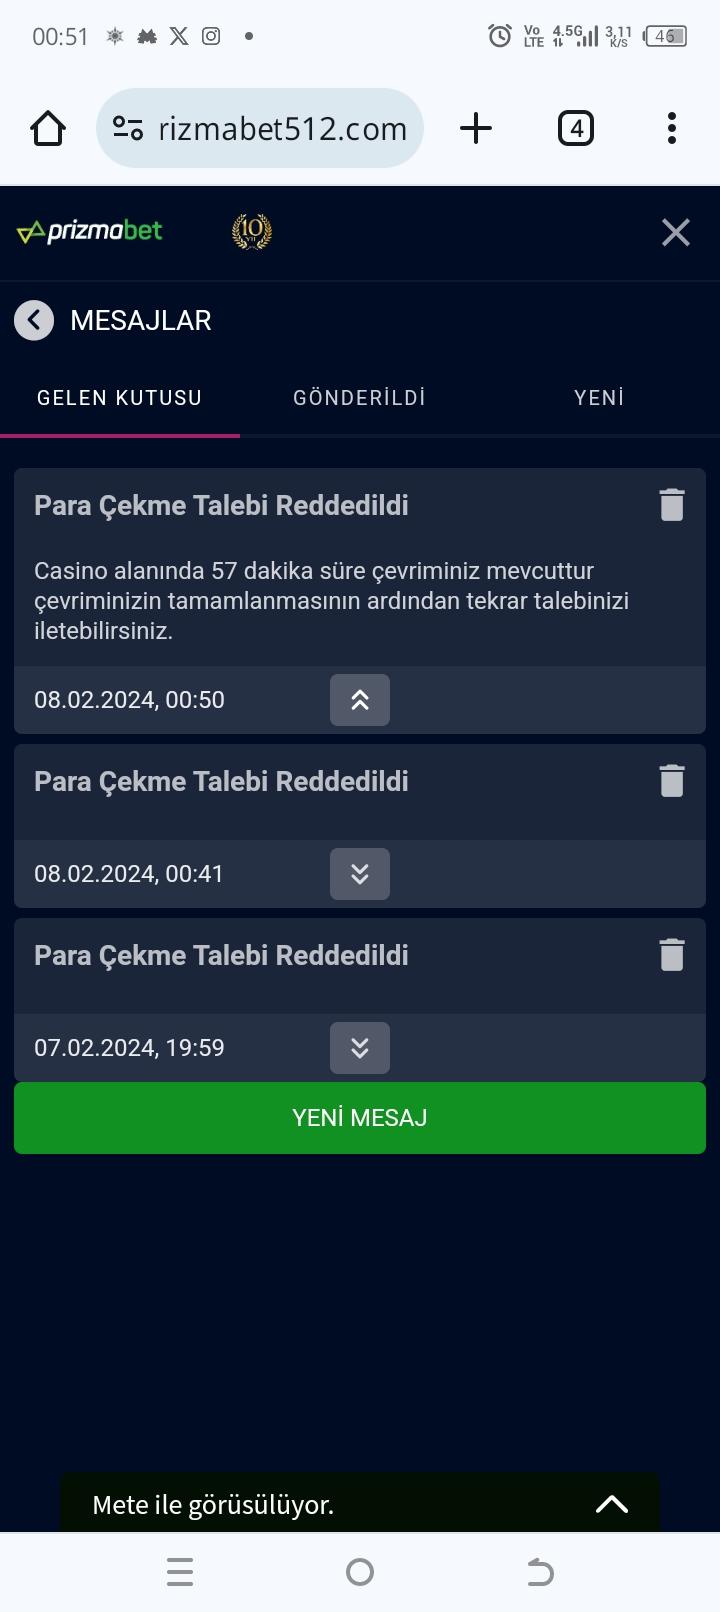 How To Make Your Product Stand Out With Türk Online Casinolar için En İyi Casino Oyun Geliştiricileri in 2021